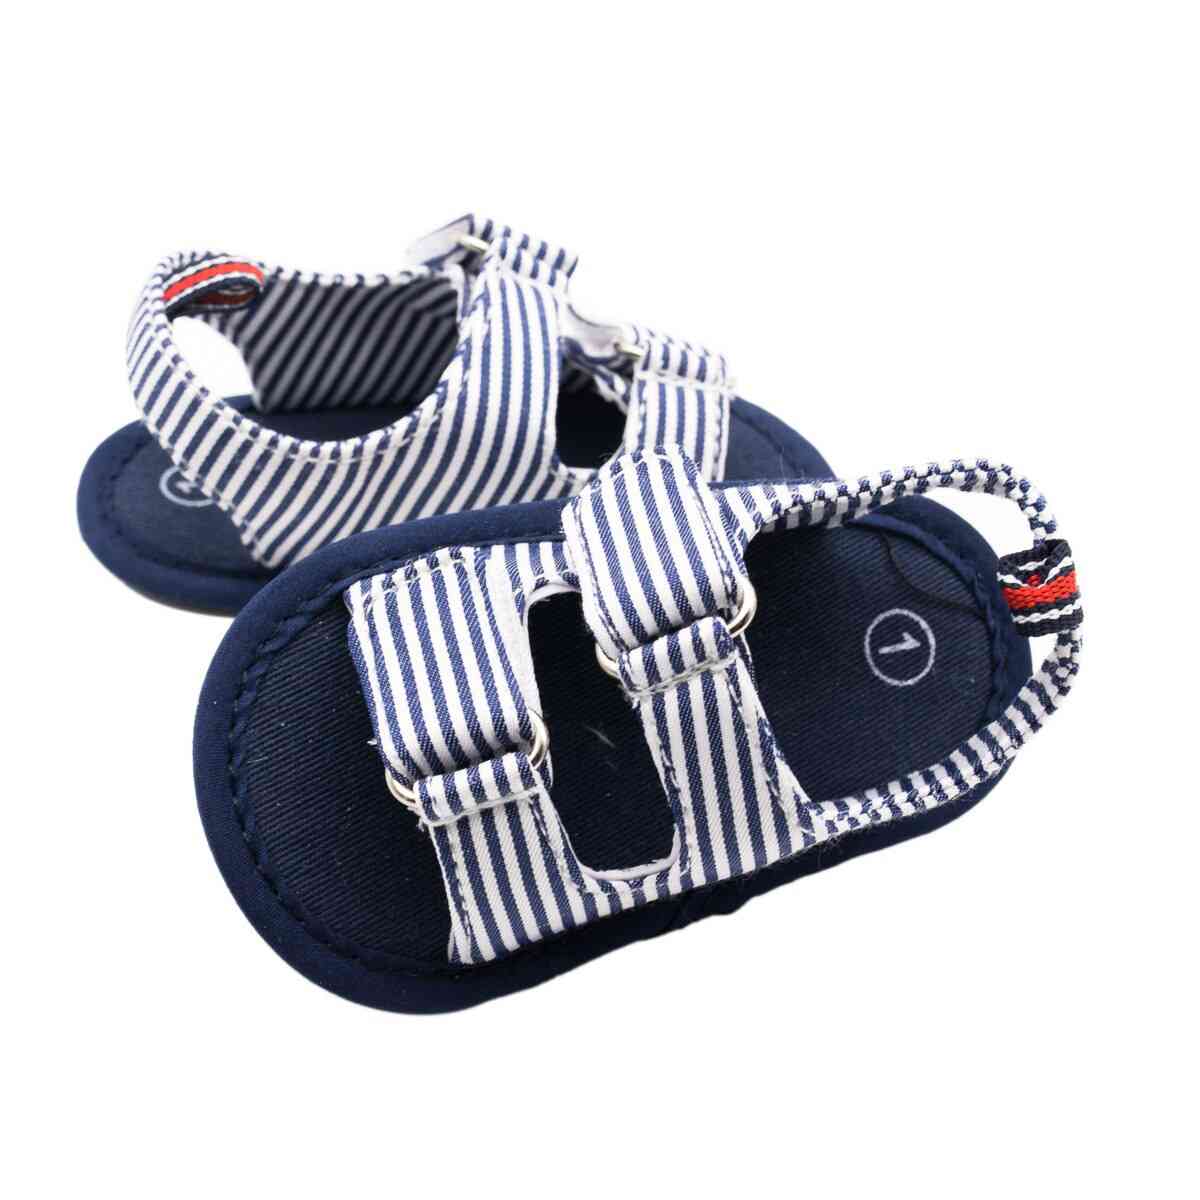 Baby Boy Summer Sandals